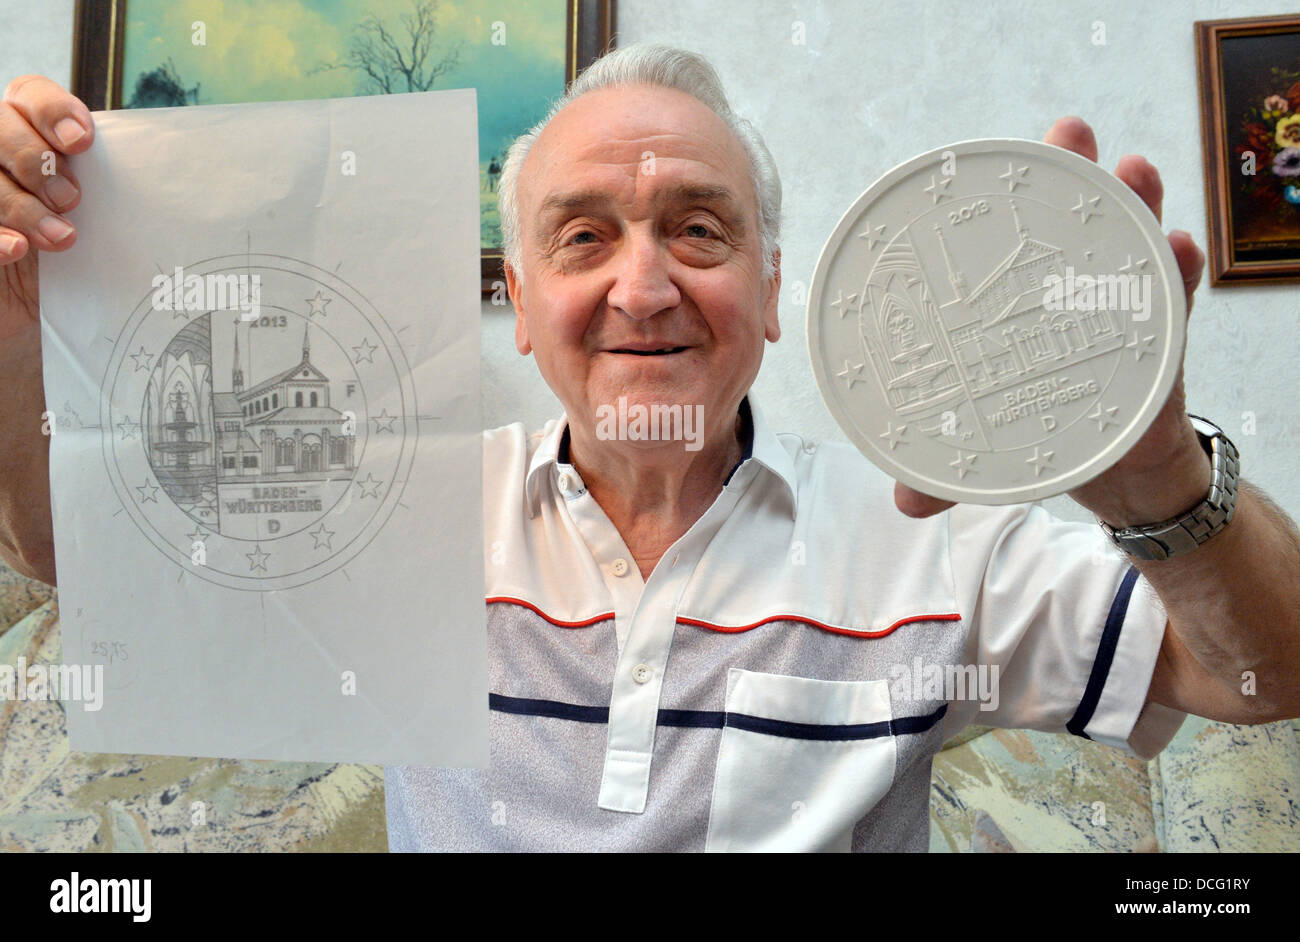 Eugen Ruhl, Künstler der Gravur Münzbild, arbeitet an einem Gipsmodell einer Münze in seinem Haus in Pforzheim, Deutschland, 30. Juli 2013. Foto: ULI DECK Stockfoto